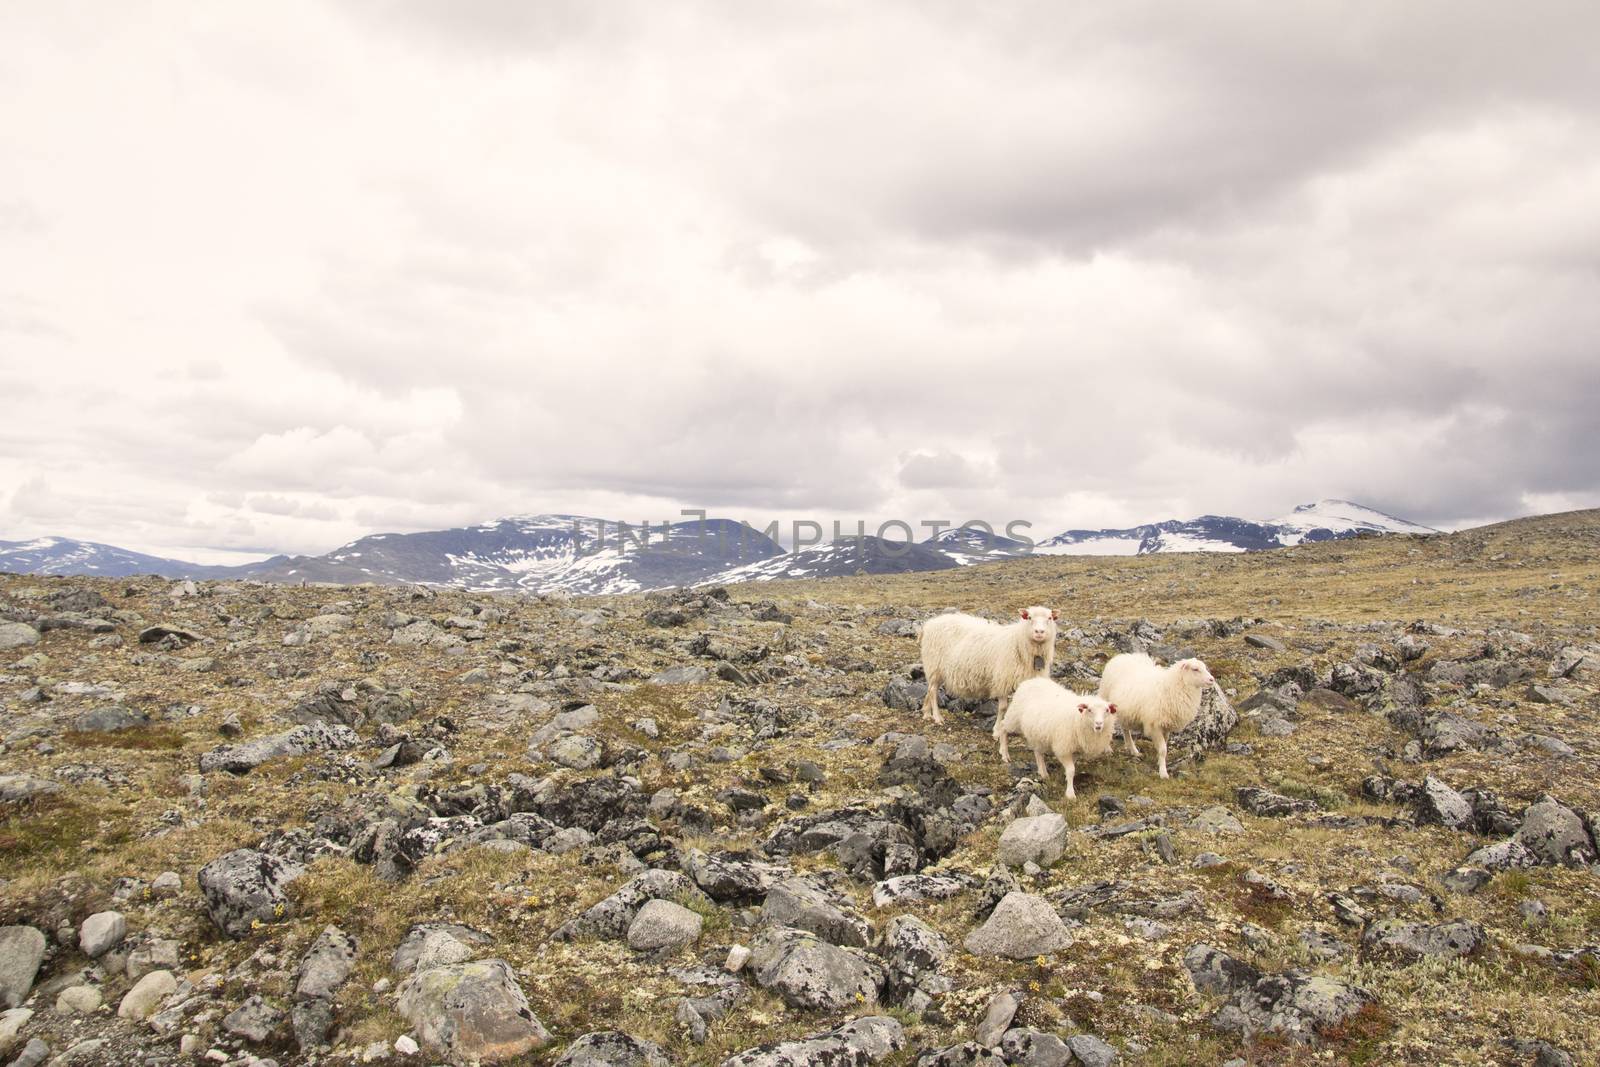 Sheeps on mountain in joutunheimen in norway